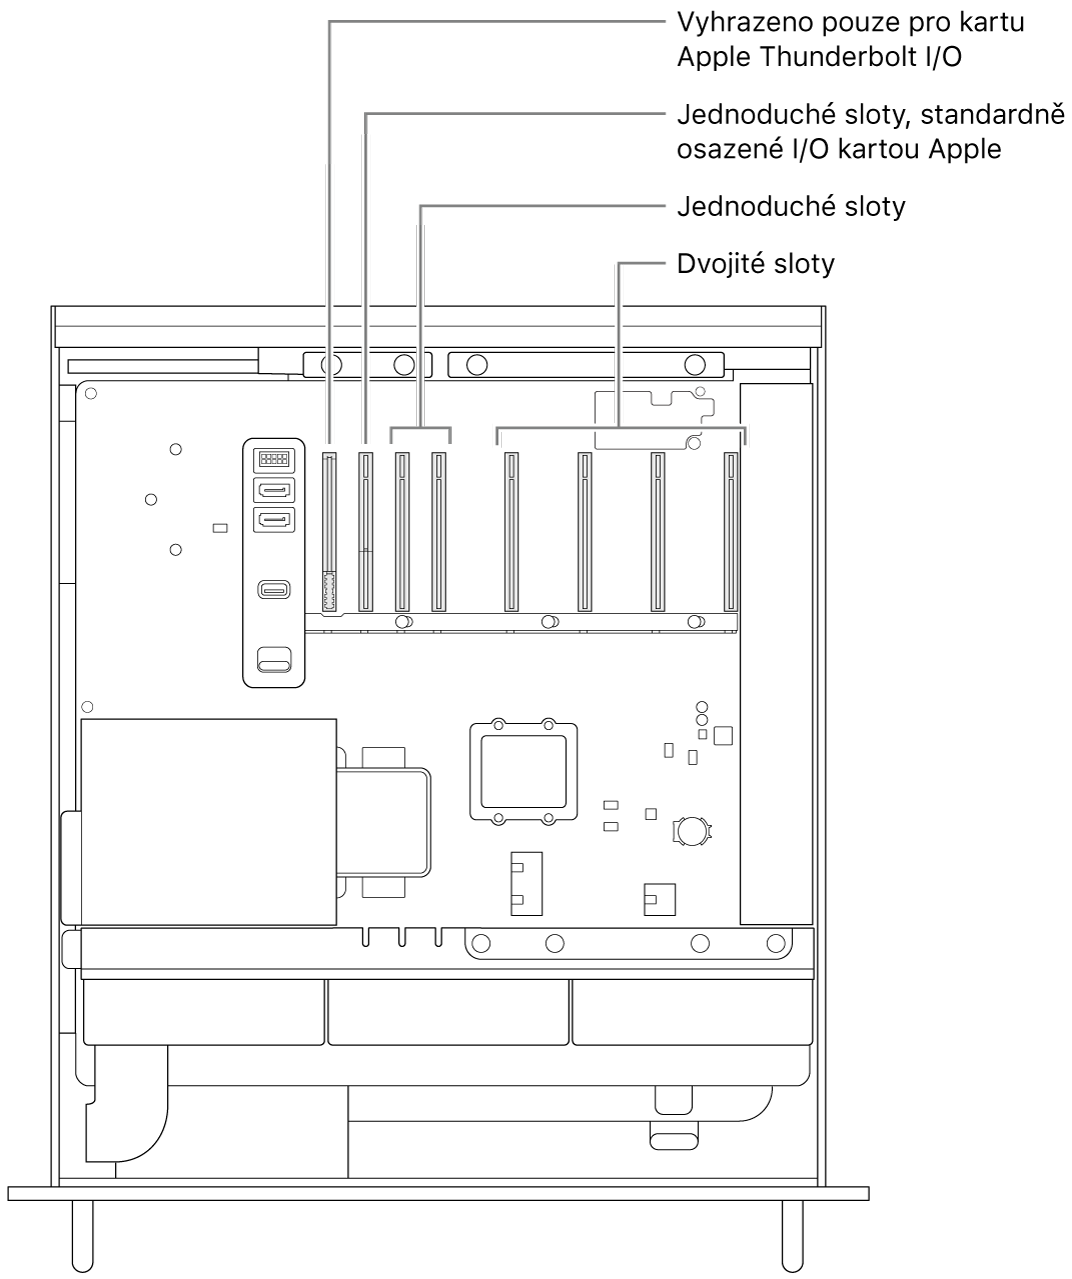 Pohled z boku do otevřeného Macu Pro s popisky znázorňujícími umístění slotu pro V/V desku Thunderbolt, jednoduchého slotu pro V/V kartu Apple, dvou dalších jednoduchých slotů a čtyř dvojitých slotů